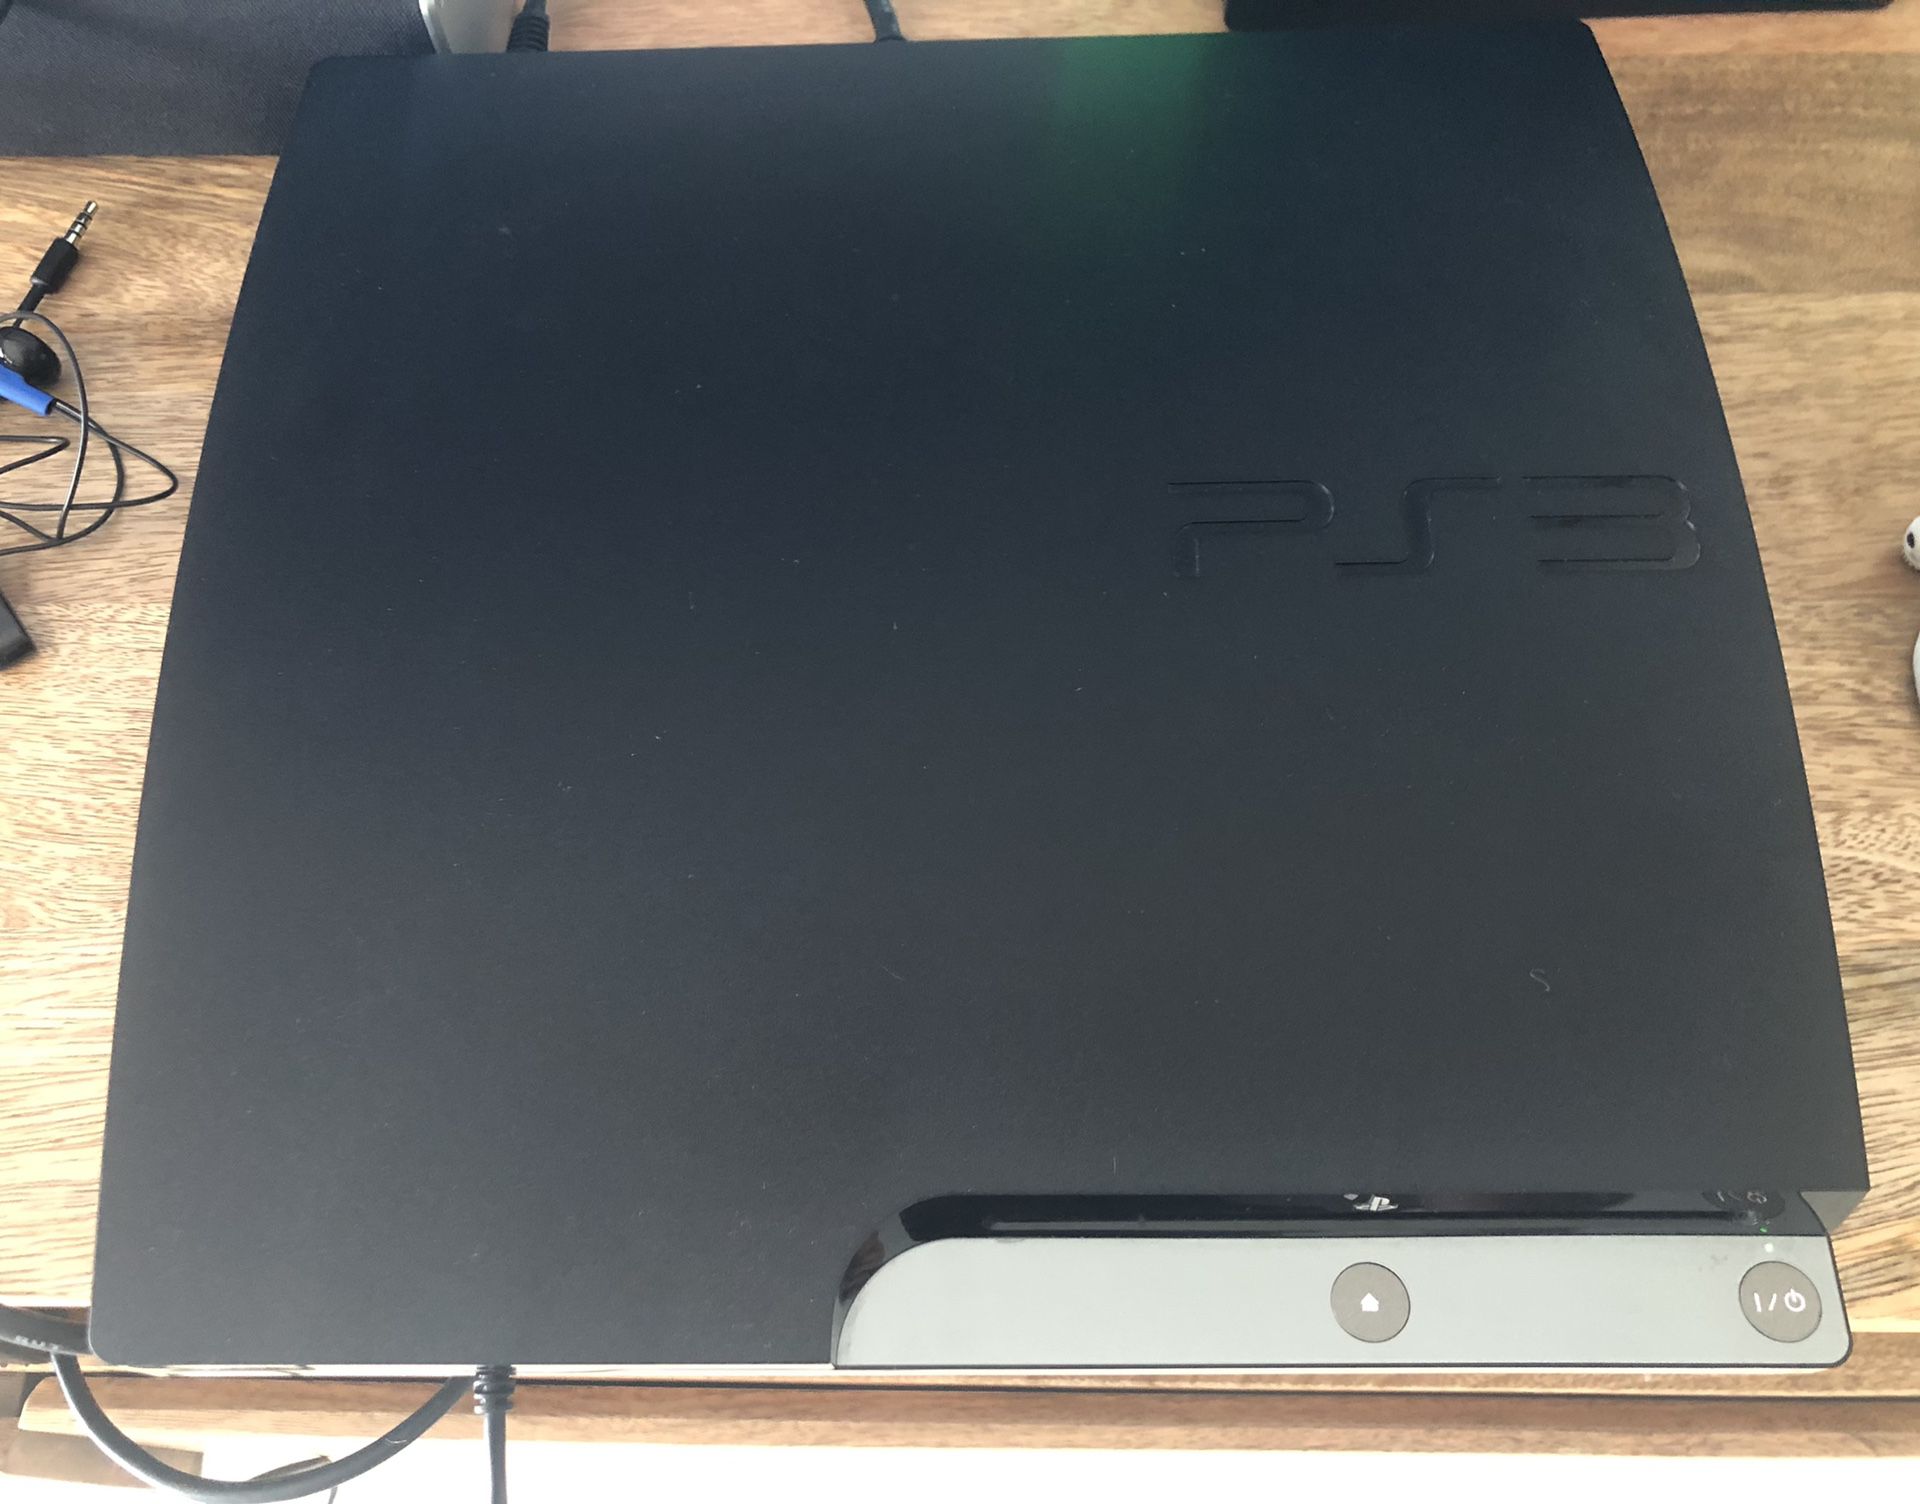 PlayStation 3 SLIM (like new) 160GB